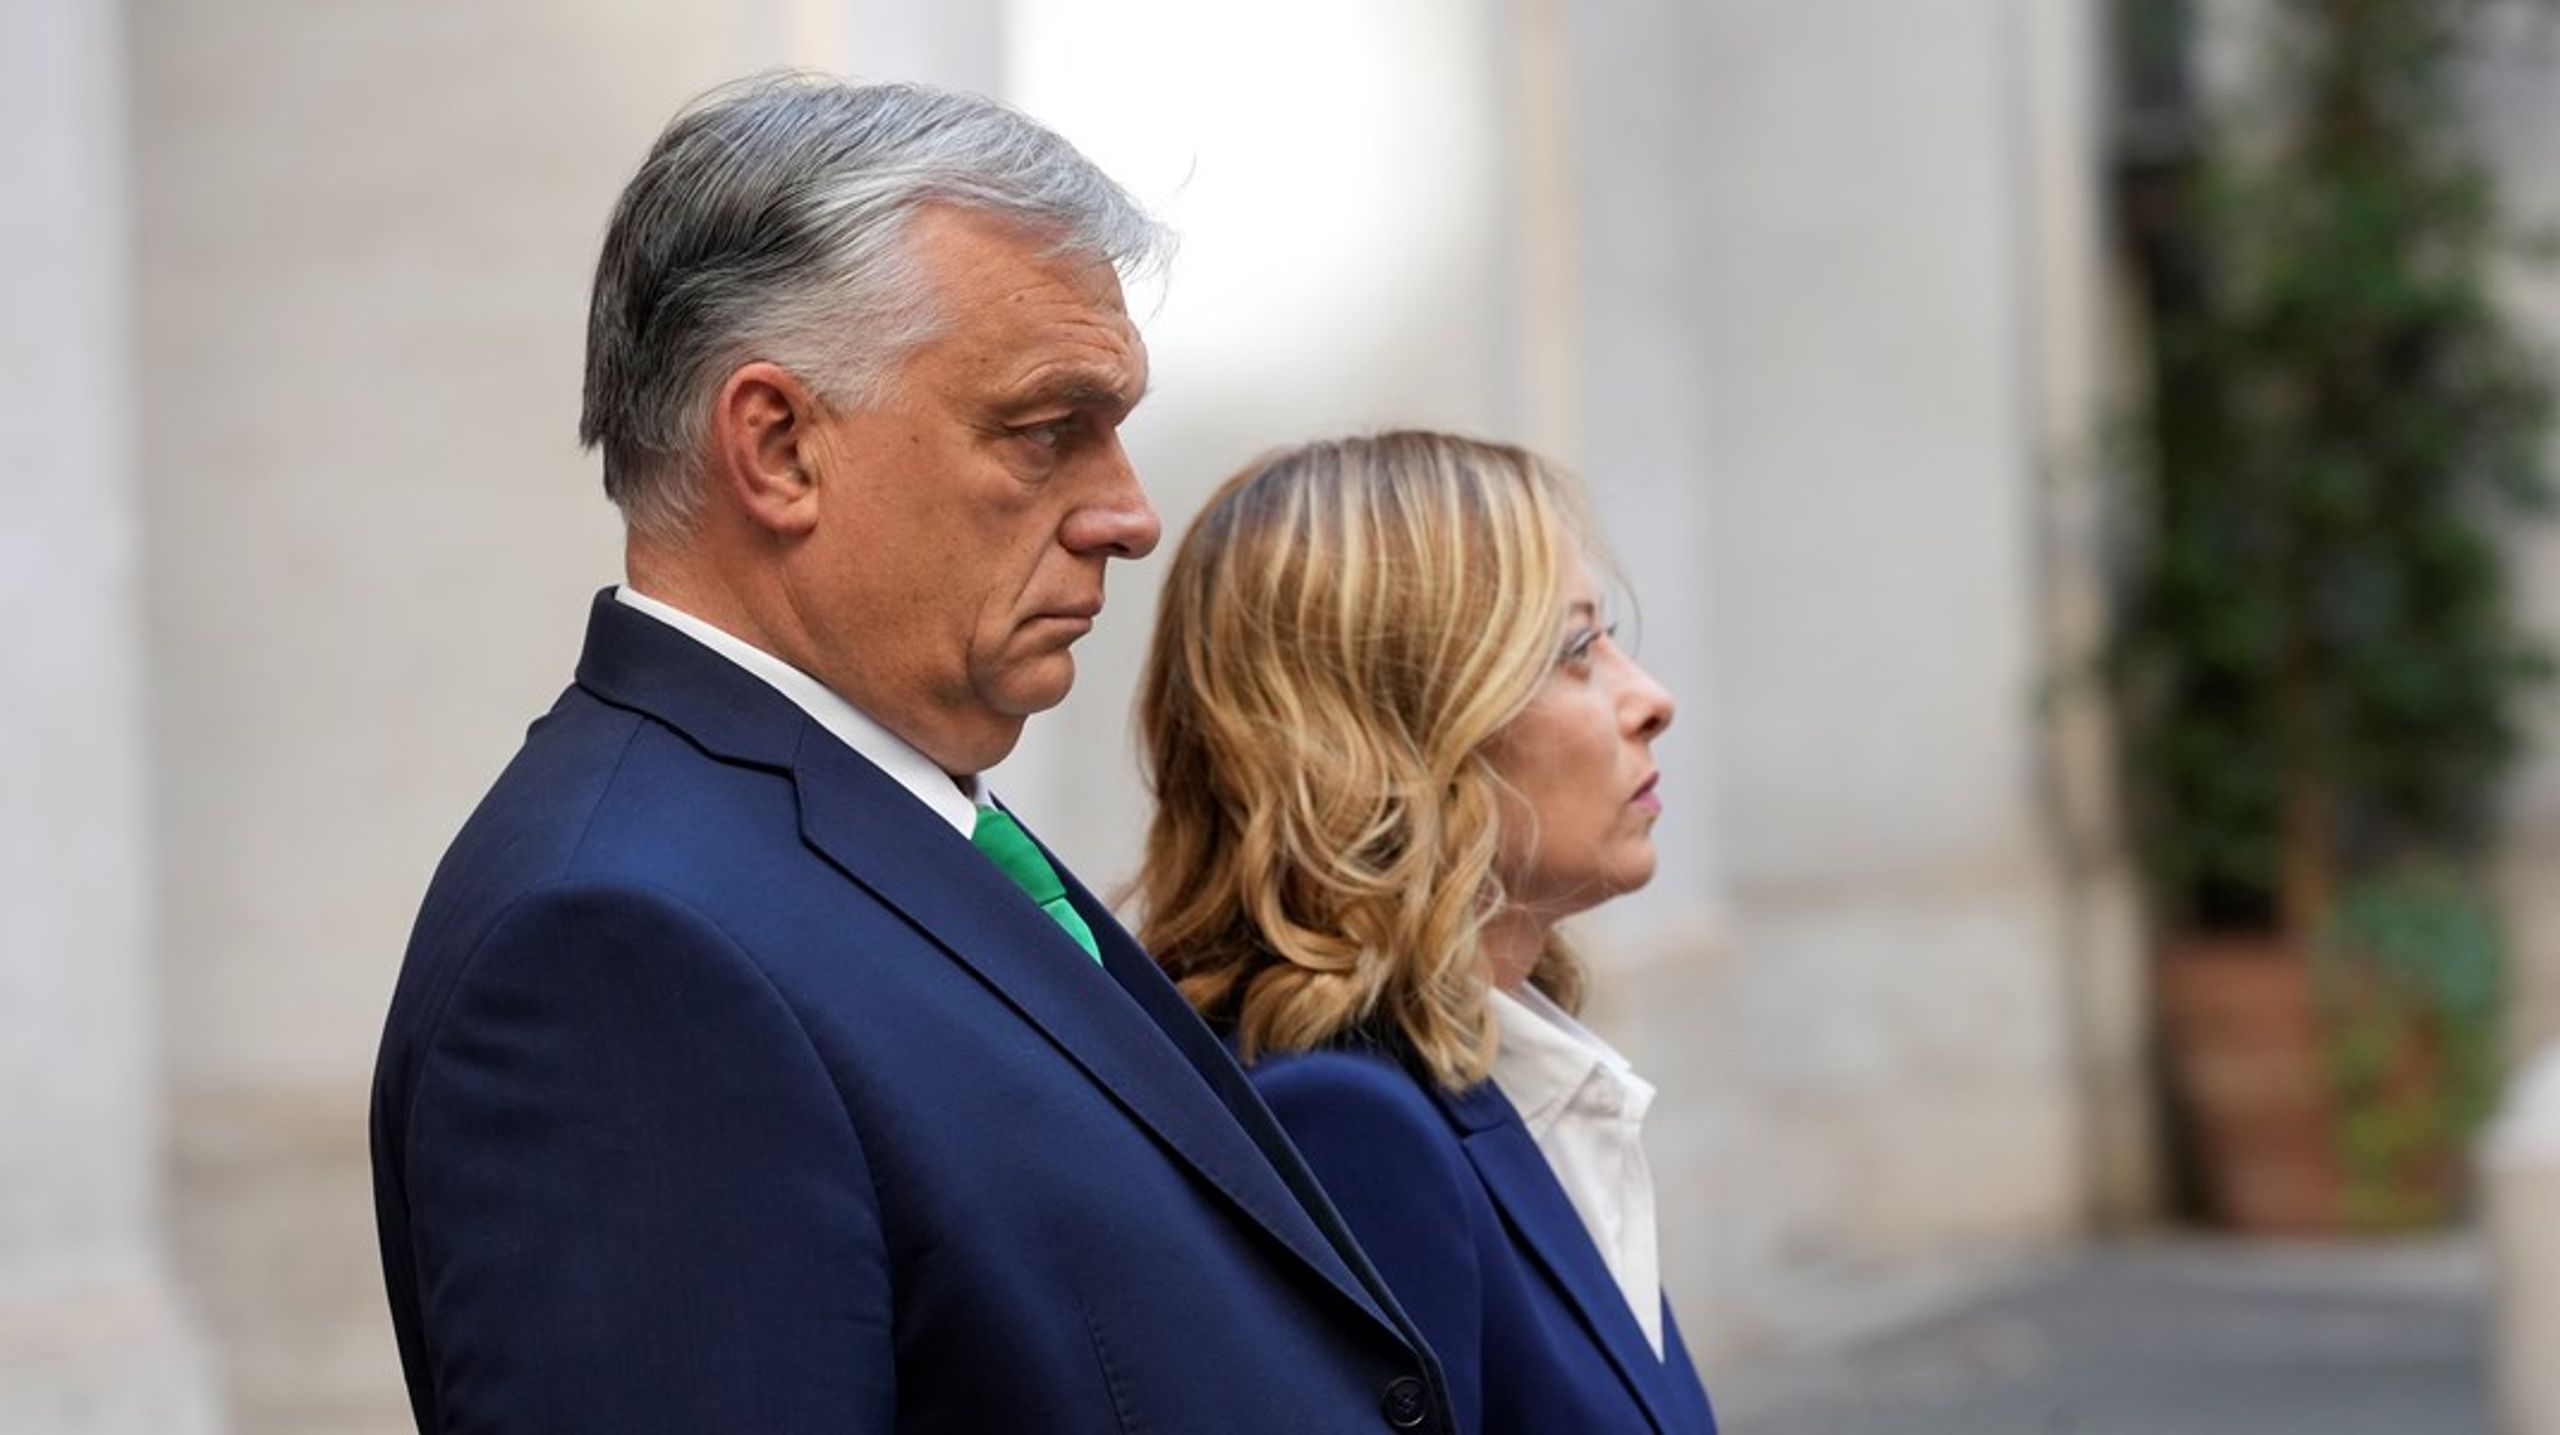 Som en del av en turné inför sitt EU-ordförandeskap besökte Viktor Orbán förra veckan Italiens ledare, Giorgia Meloni, som har mycket gemensamt med hans högernationalistiska åsikter.